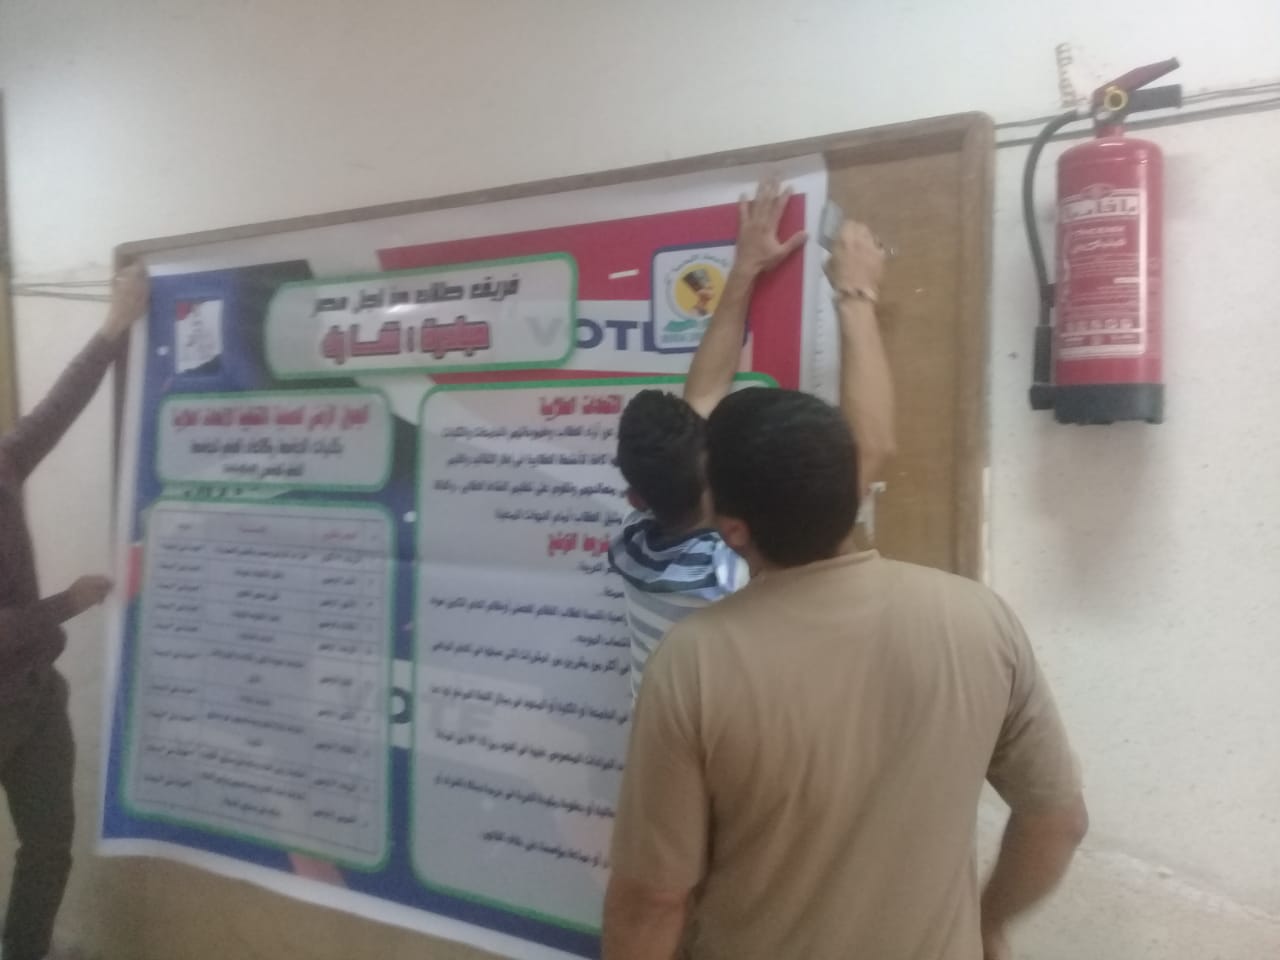 فريق طلاب من أجل مصر بجامعة المنيا يطلق مبادرة شارك للتعريف بالاتحادات الطلابية (7)